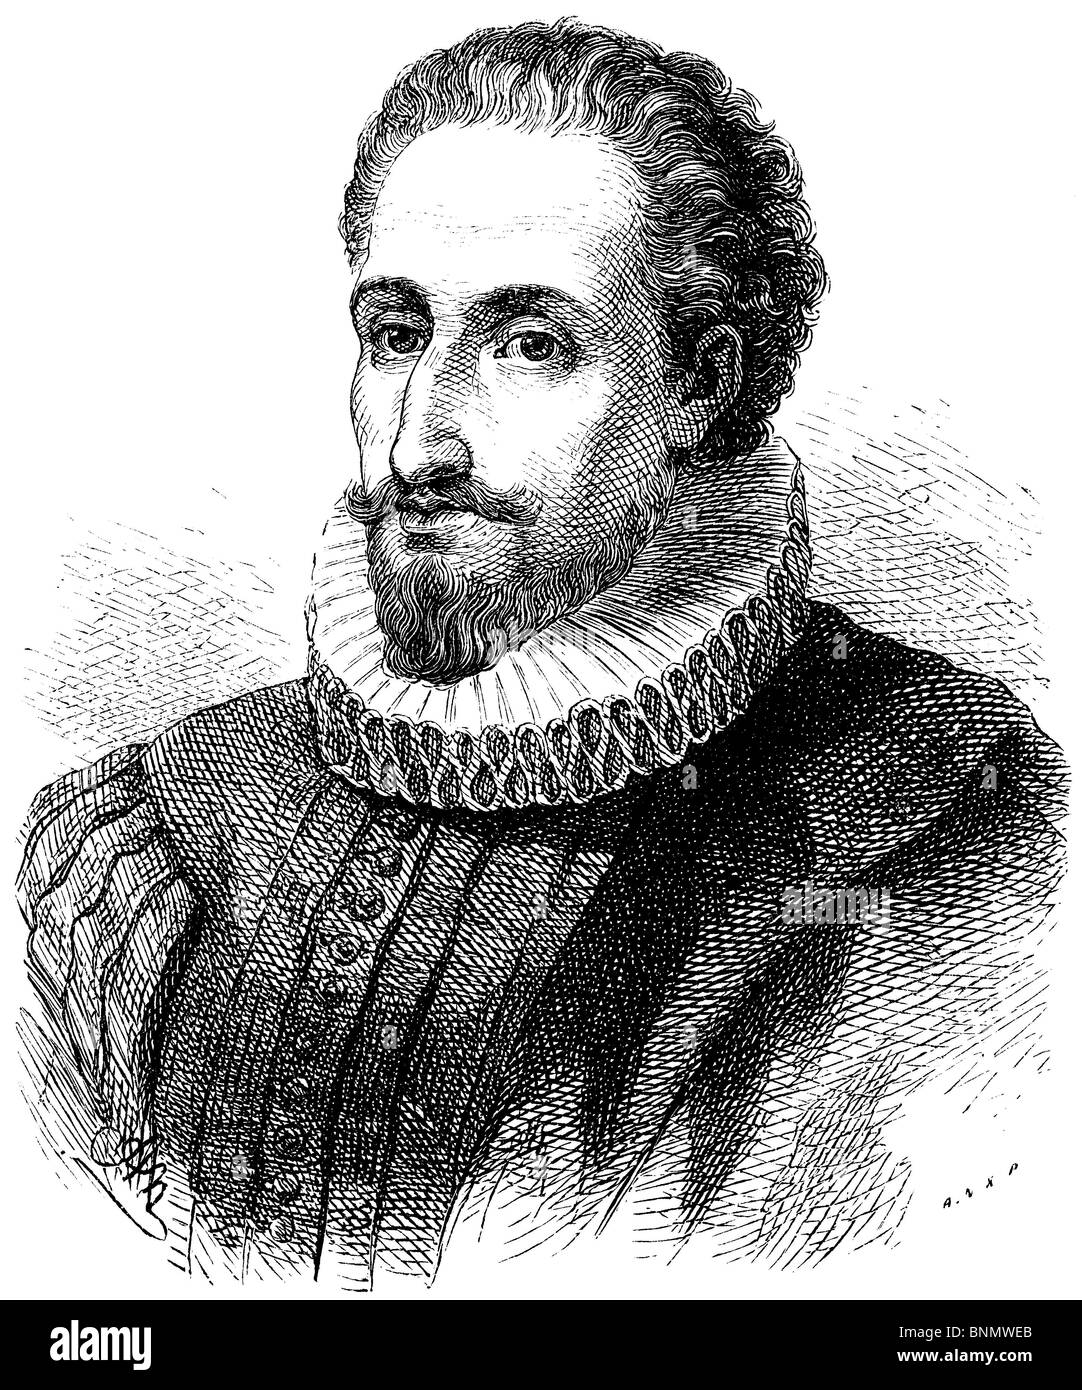 Miguel de Cervantes Saavedra (1547 - 1616), Spanish novelist, poet, and ...